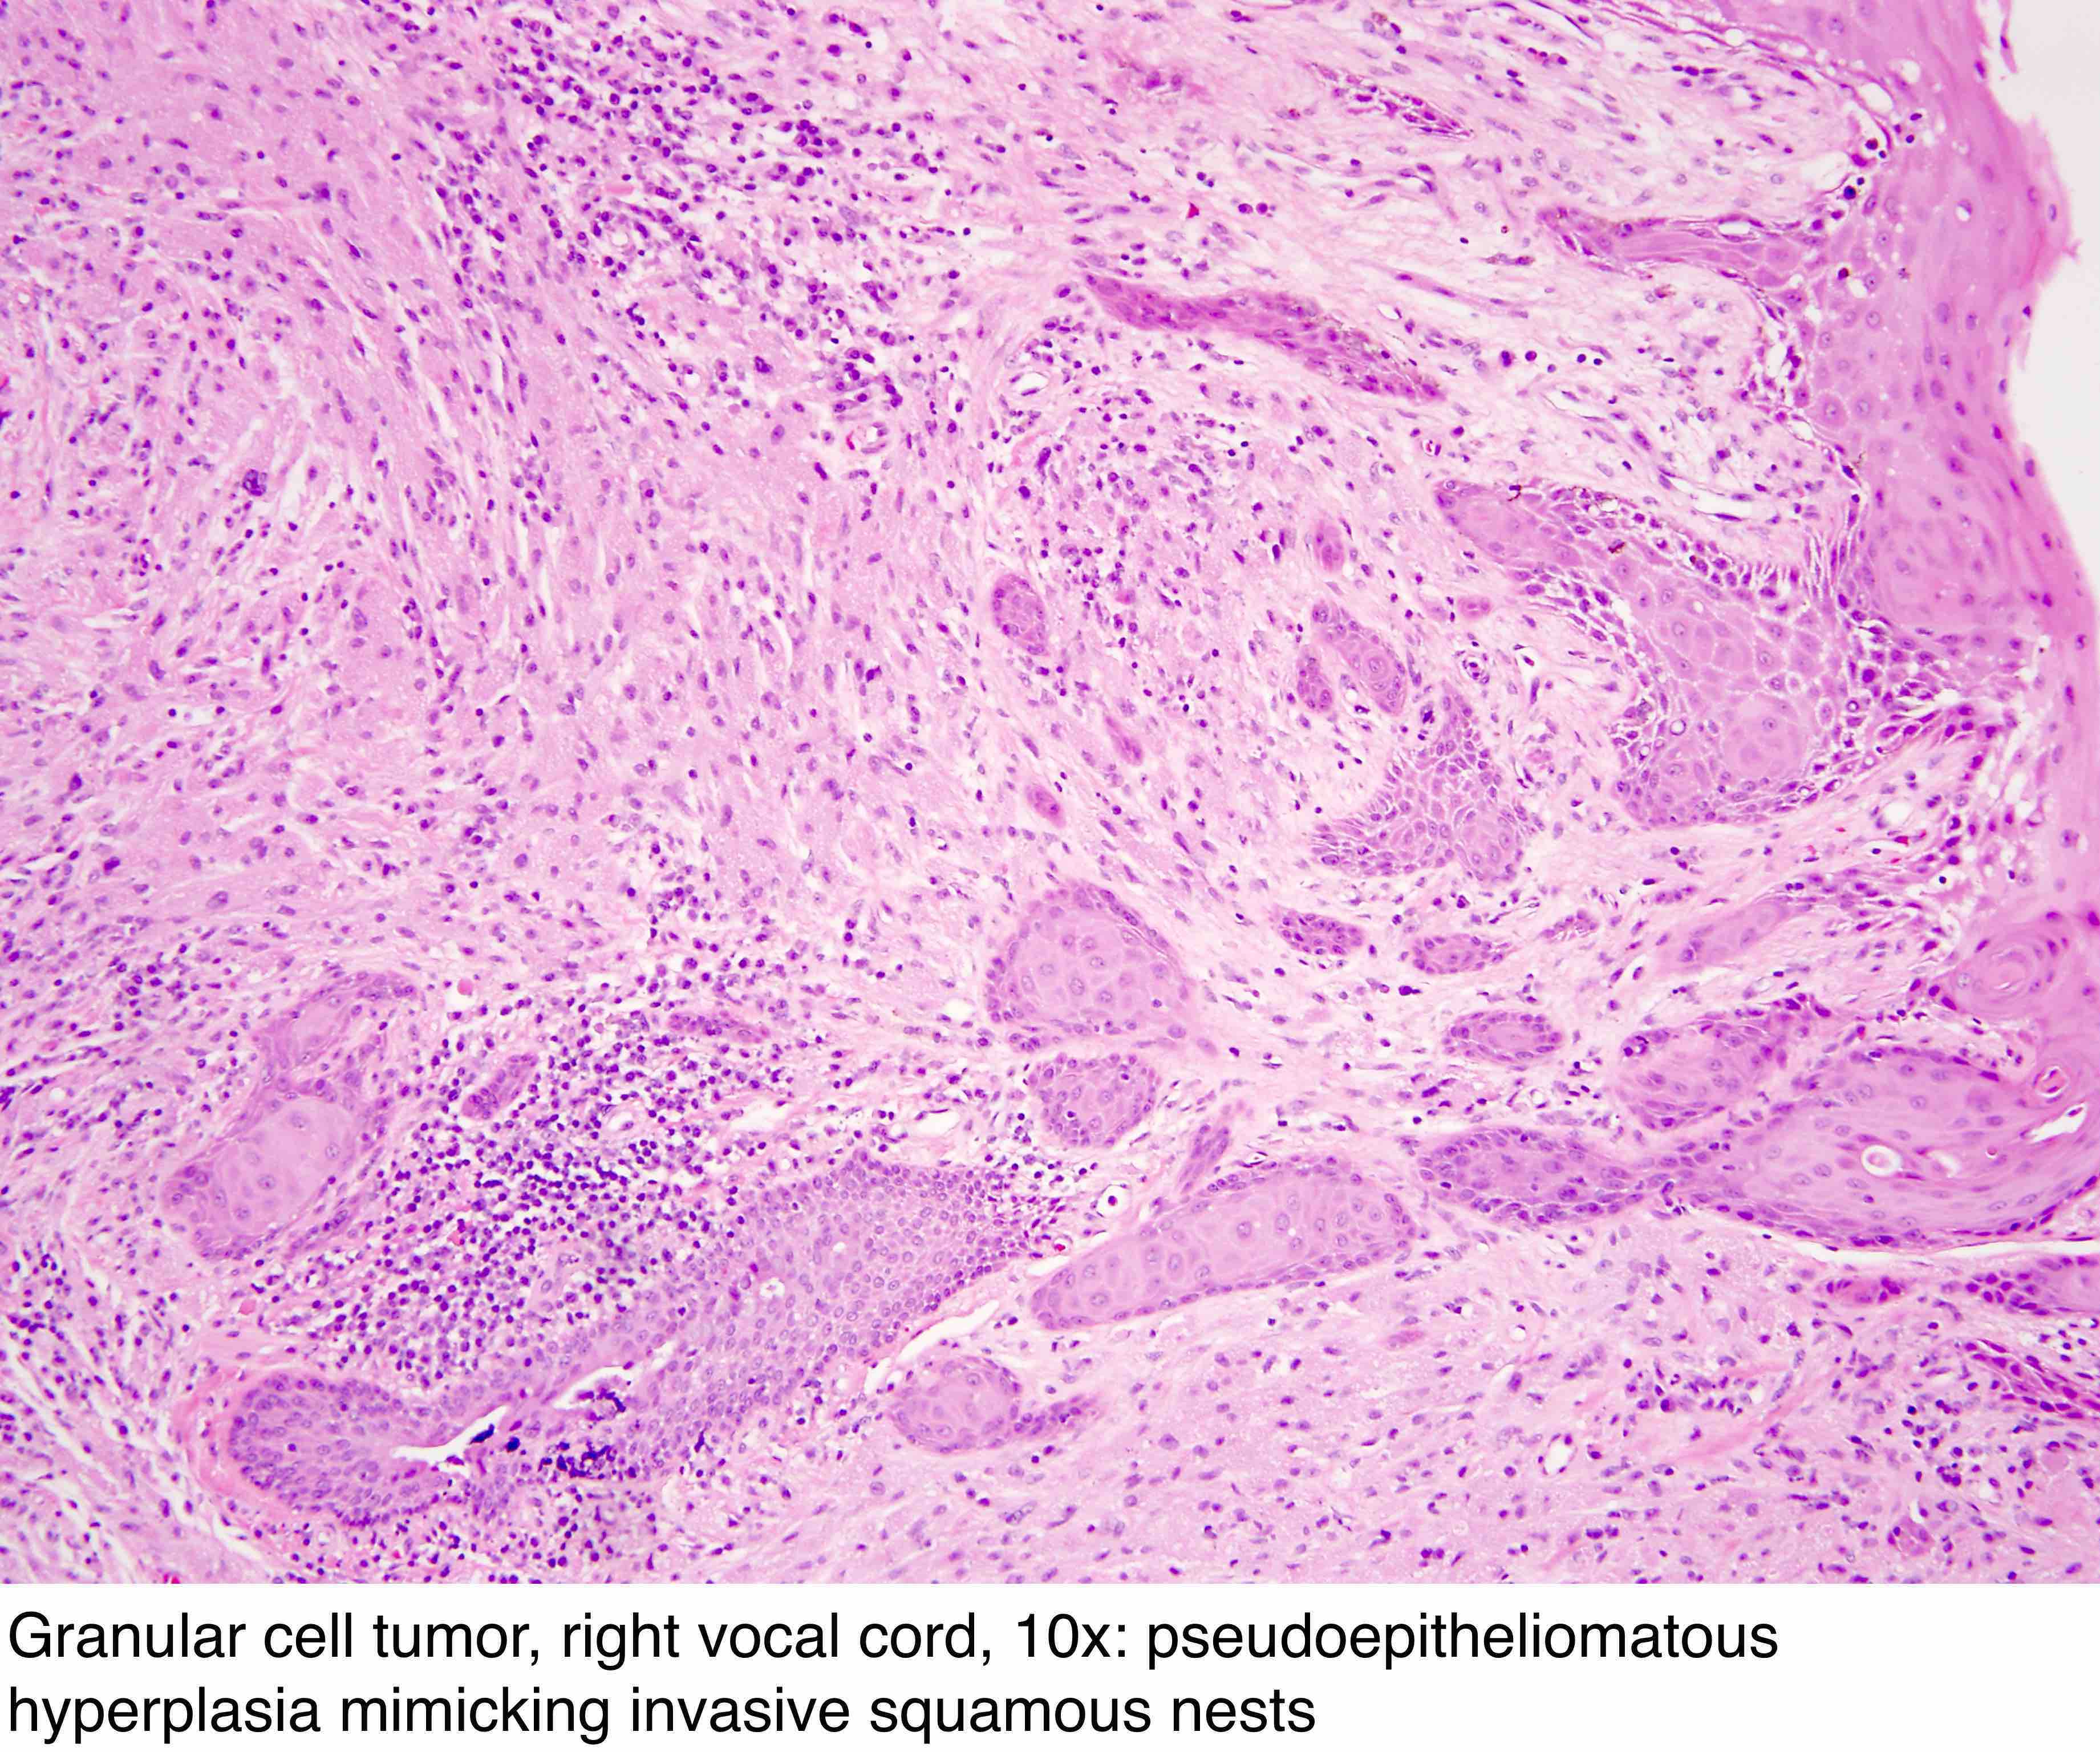 Pathology Outlines Granular Cell Tumor